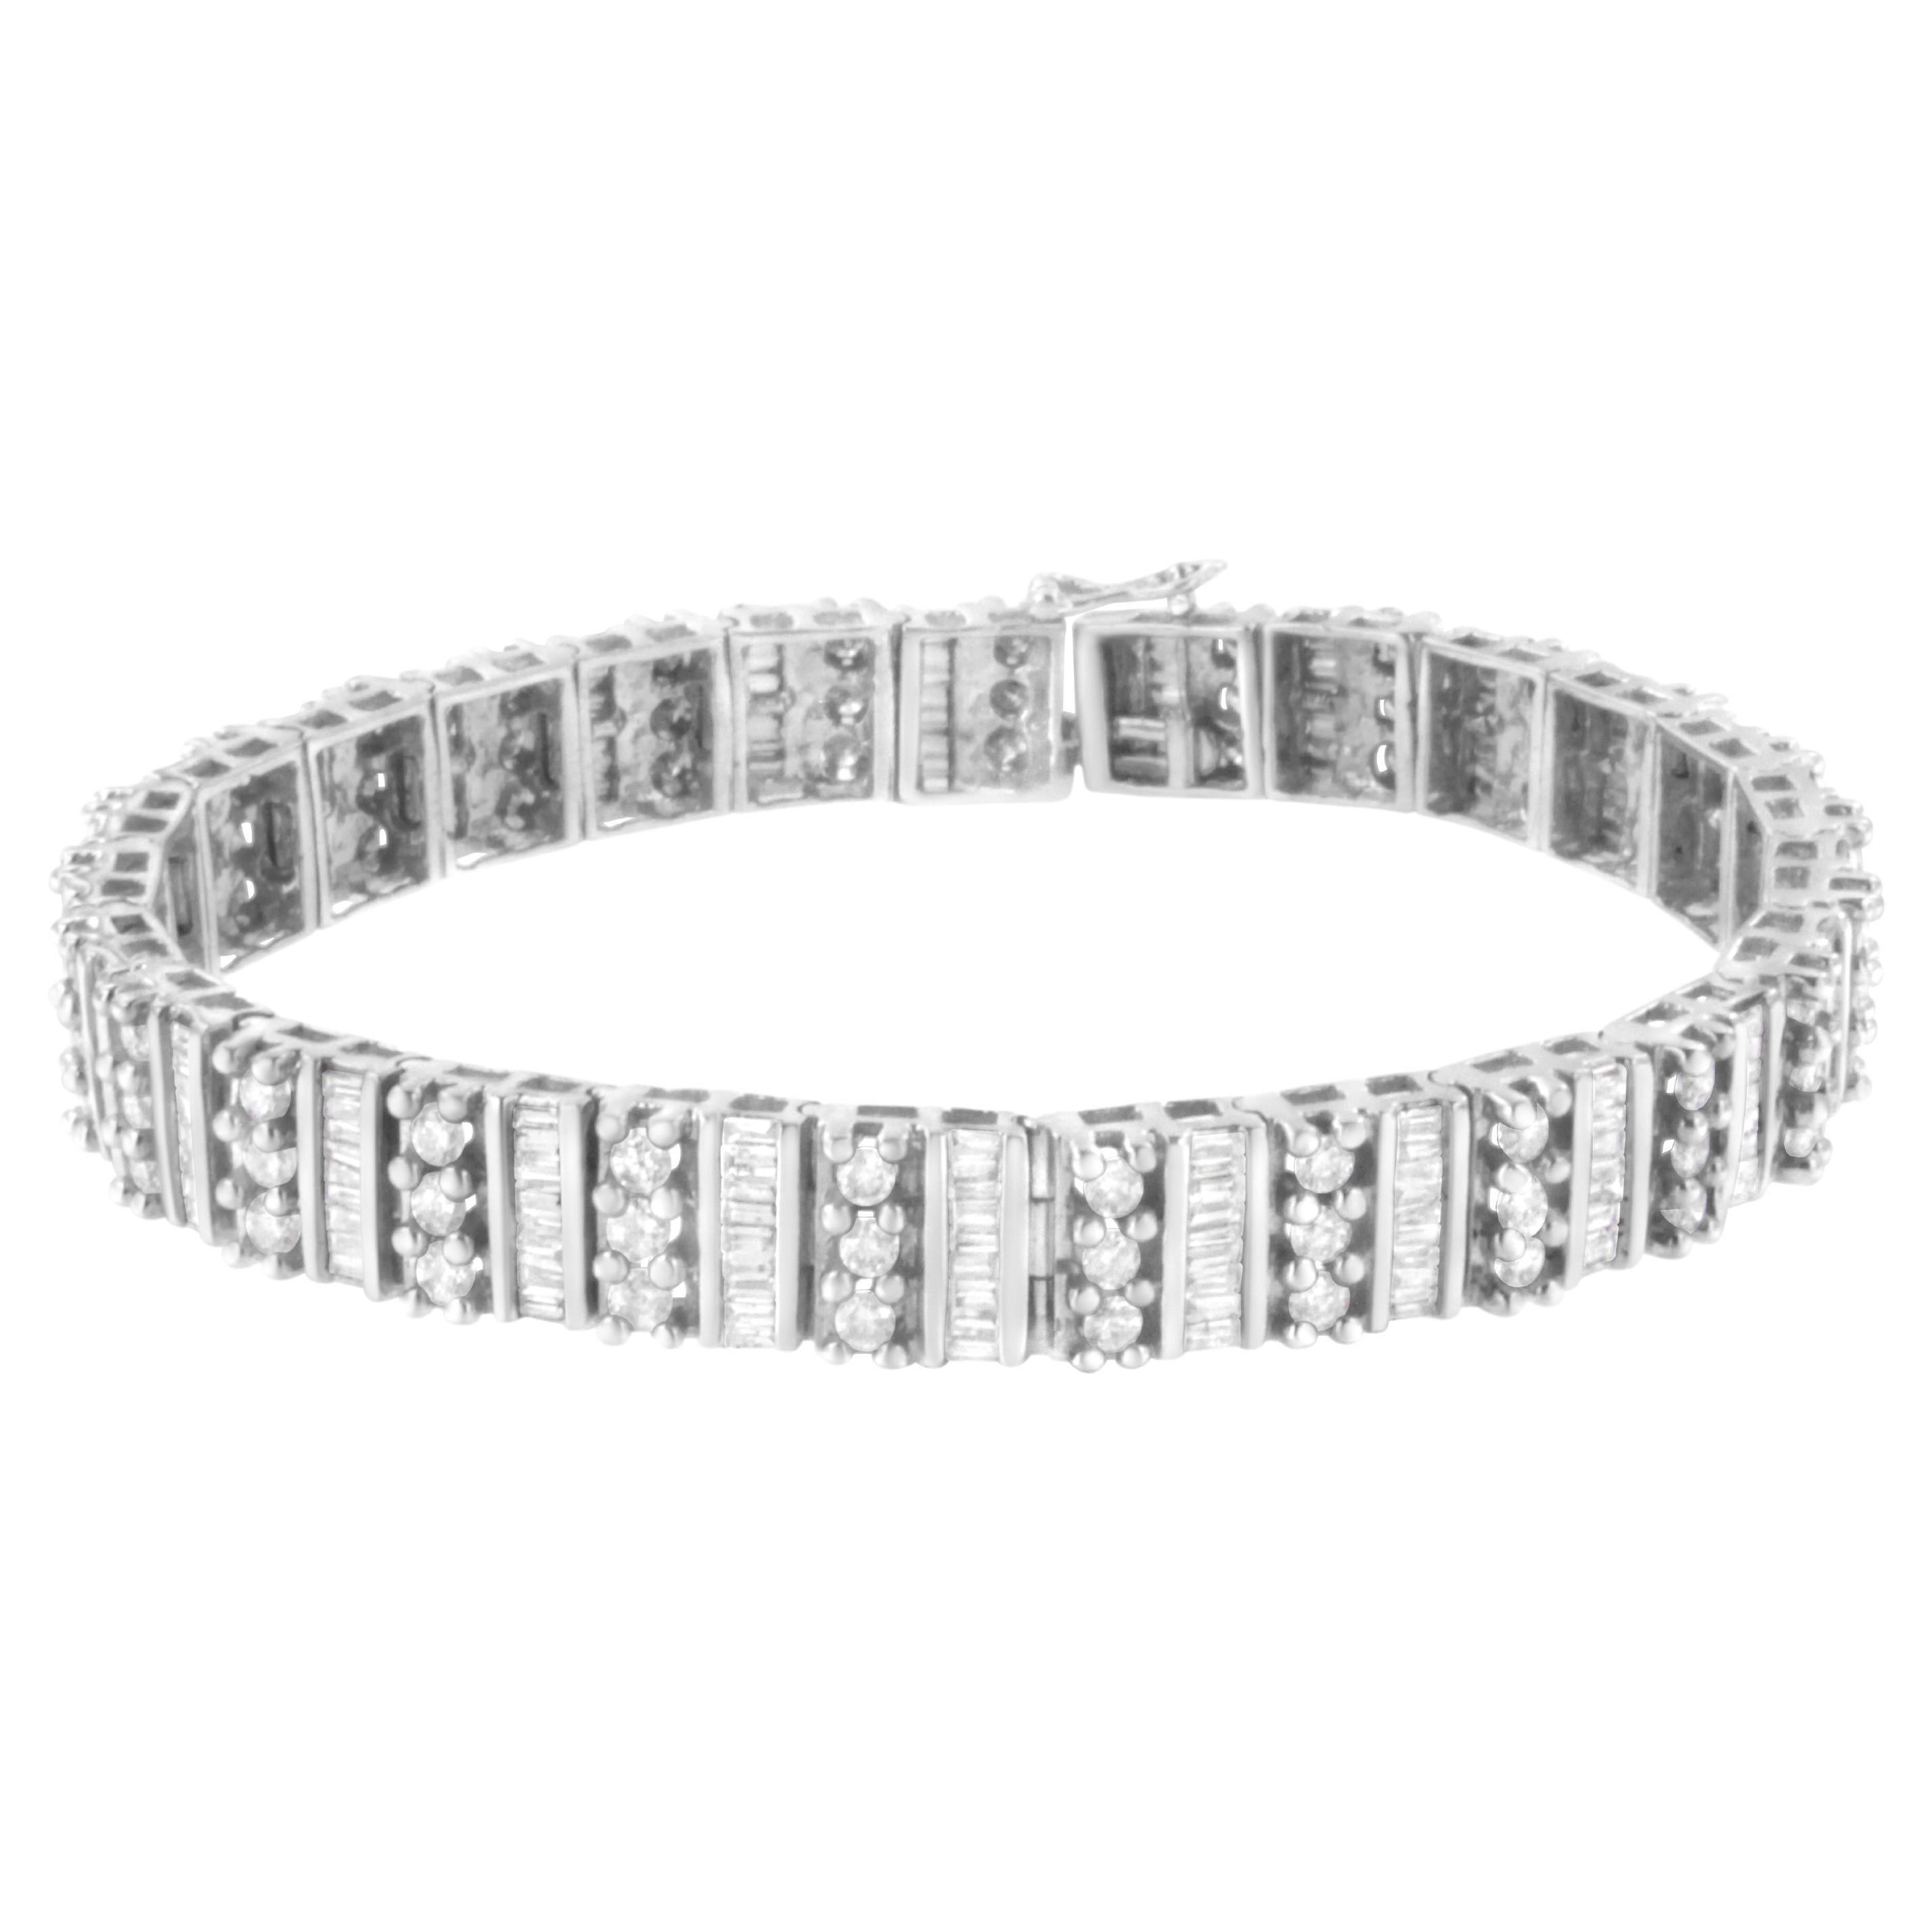 Bracelet tennis en or blanc 14 carats avec diamants baguettes et ronds taille brillant de 4 7/8 carats